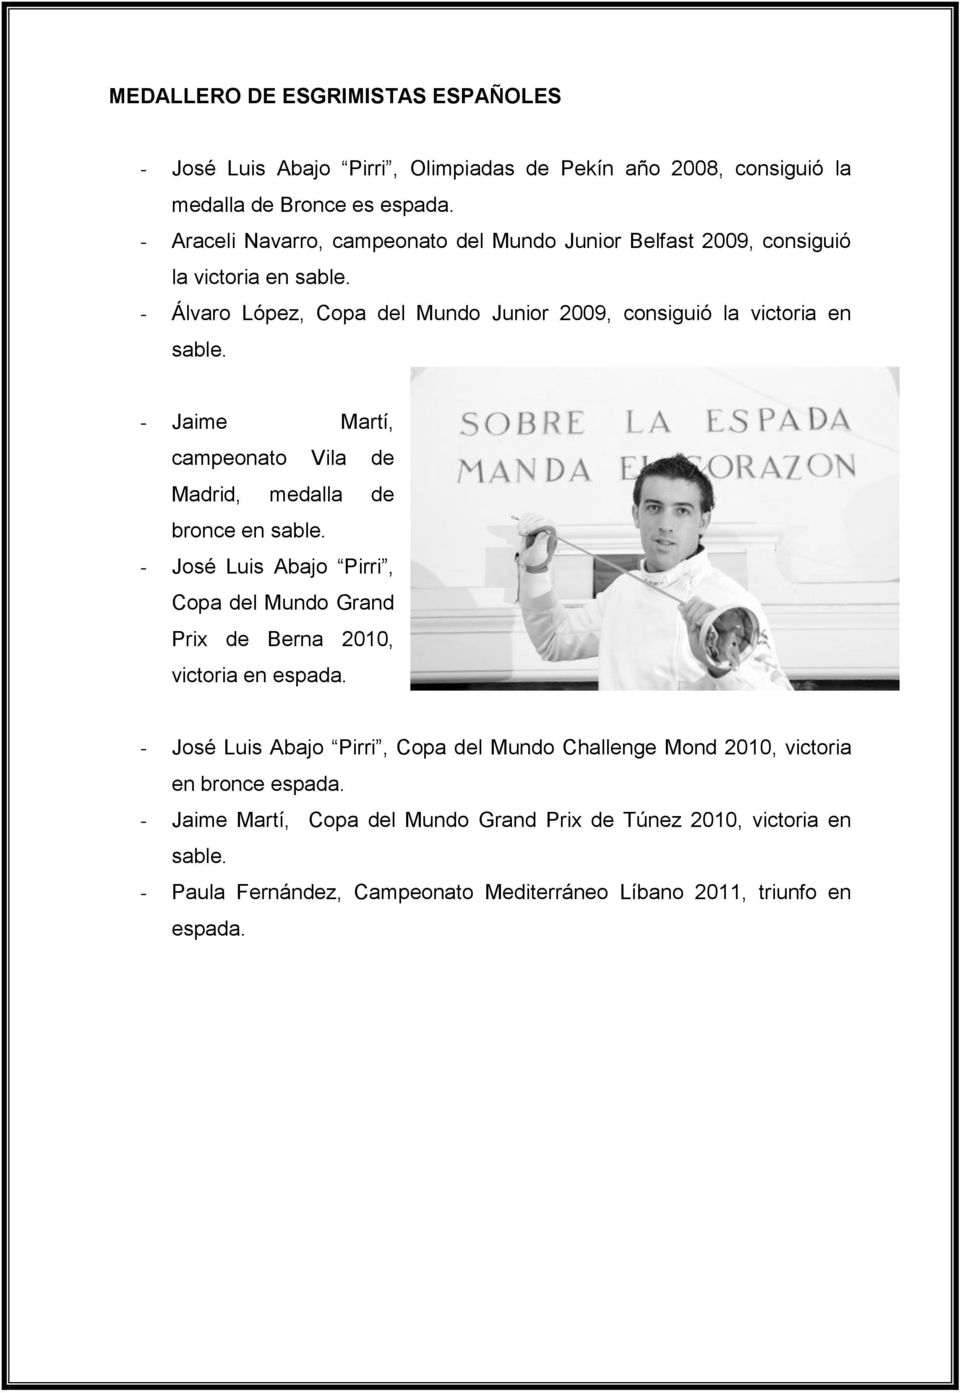 - Jaime Martí, campeonato Vila de Madrid, medalla de bronce en sable. - José Luis Abajo Pirri, Copa del Mundo Grand Prix de Berna 2010, victoria en espada.